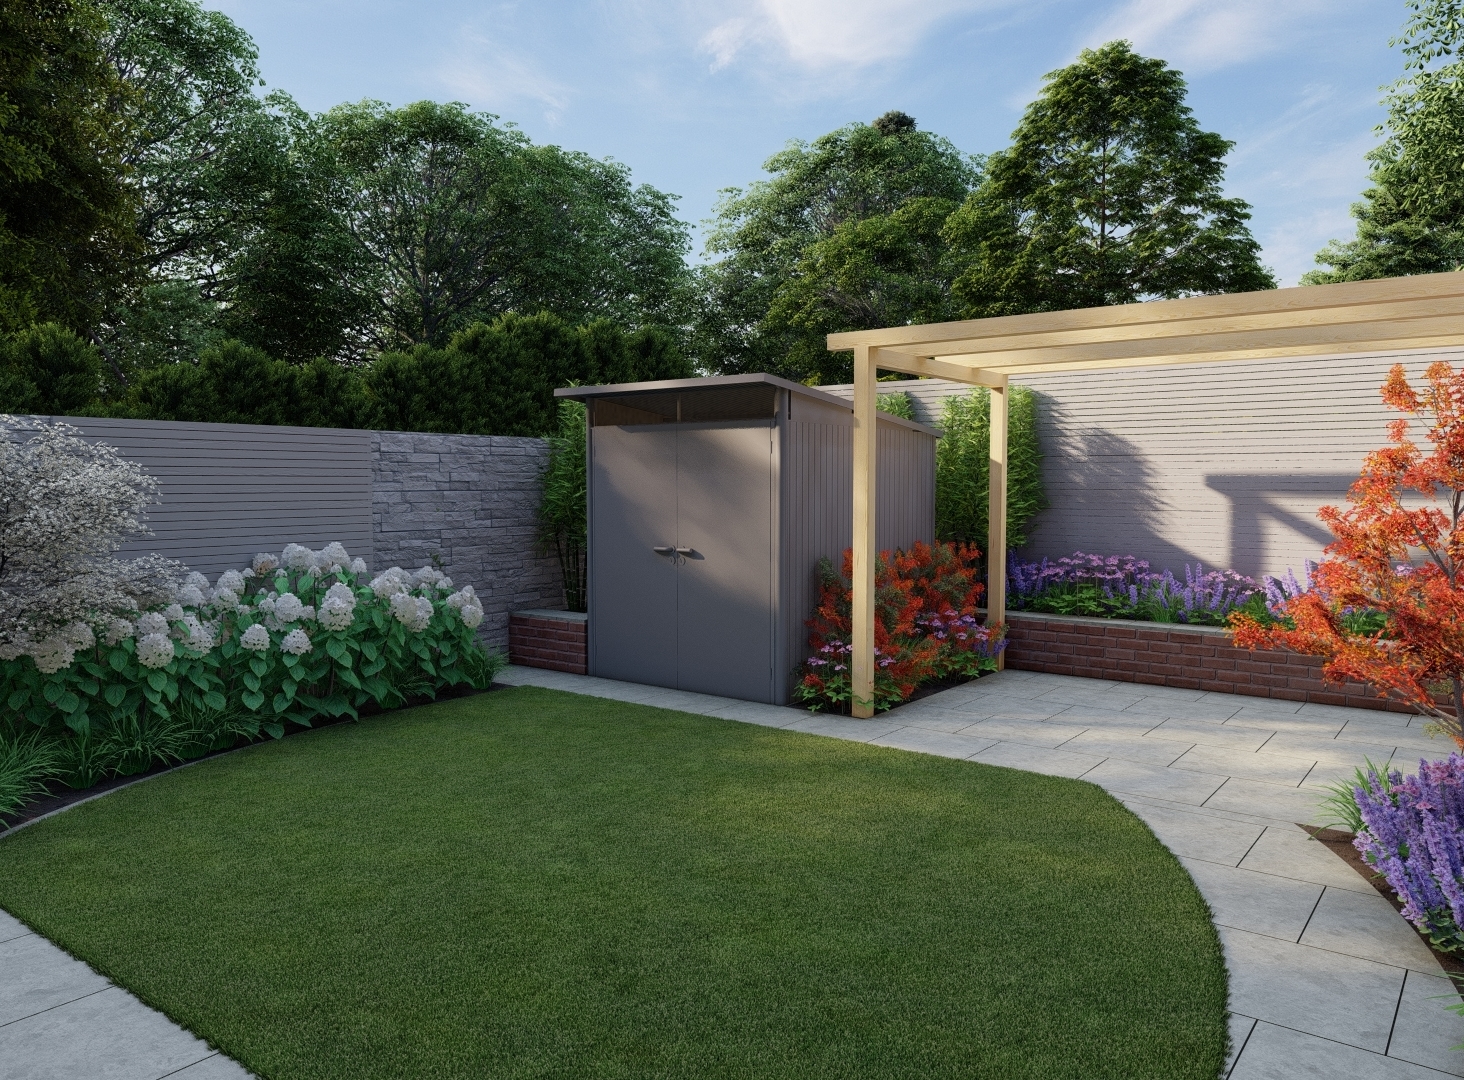 Garden Design for Family Garden in Ashbourne | Owen Chubb Garden Landscapers, Tel 087-2306 128